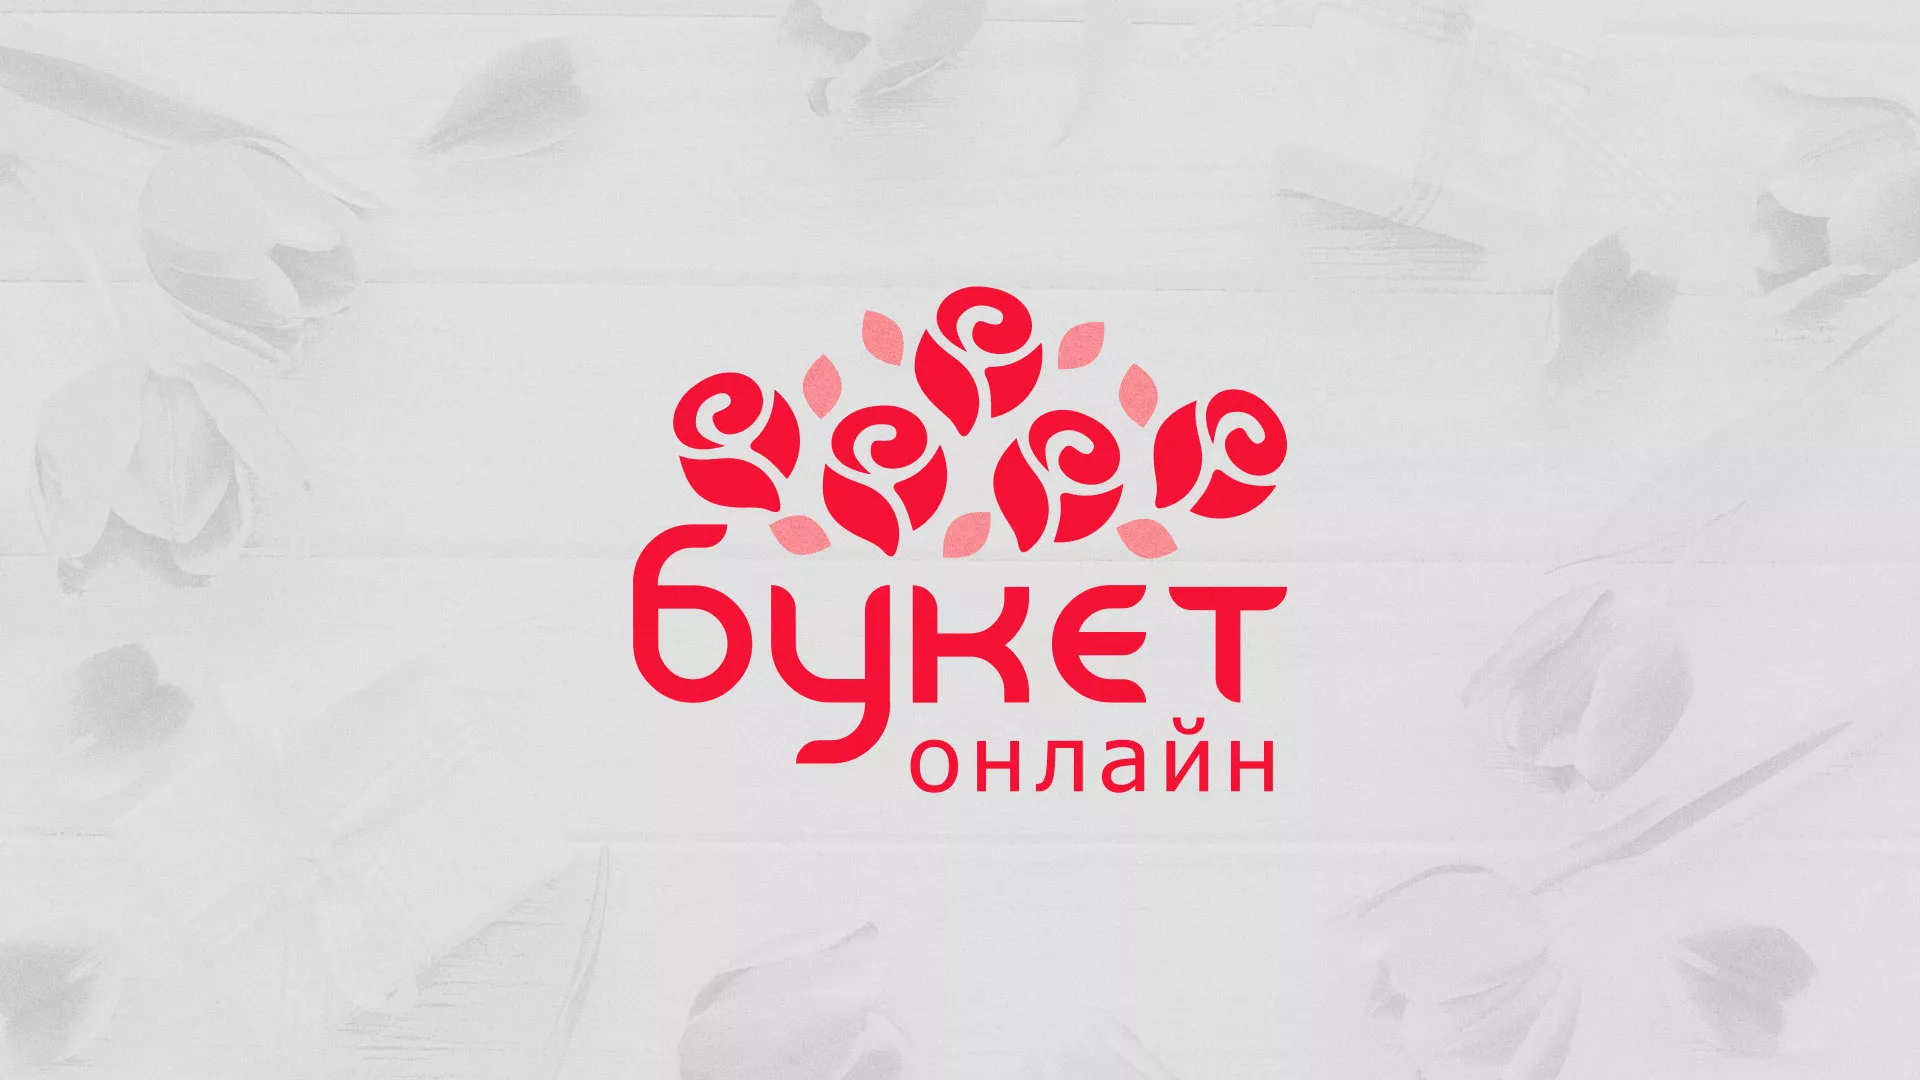 Создание интернет-магазина «Букет-онлайн» по цветам в Усть-Катаве